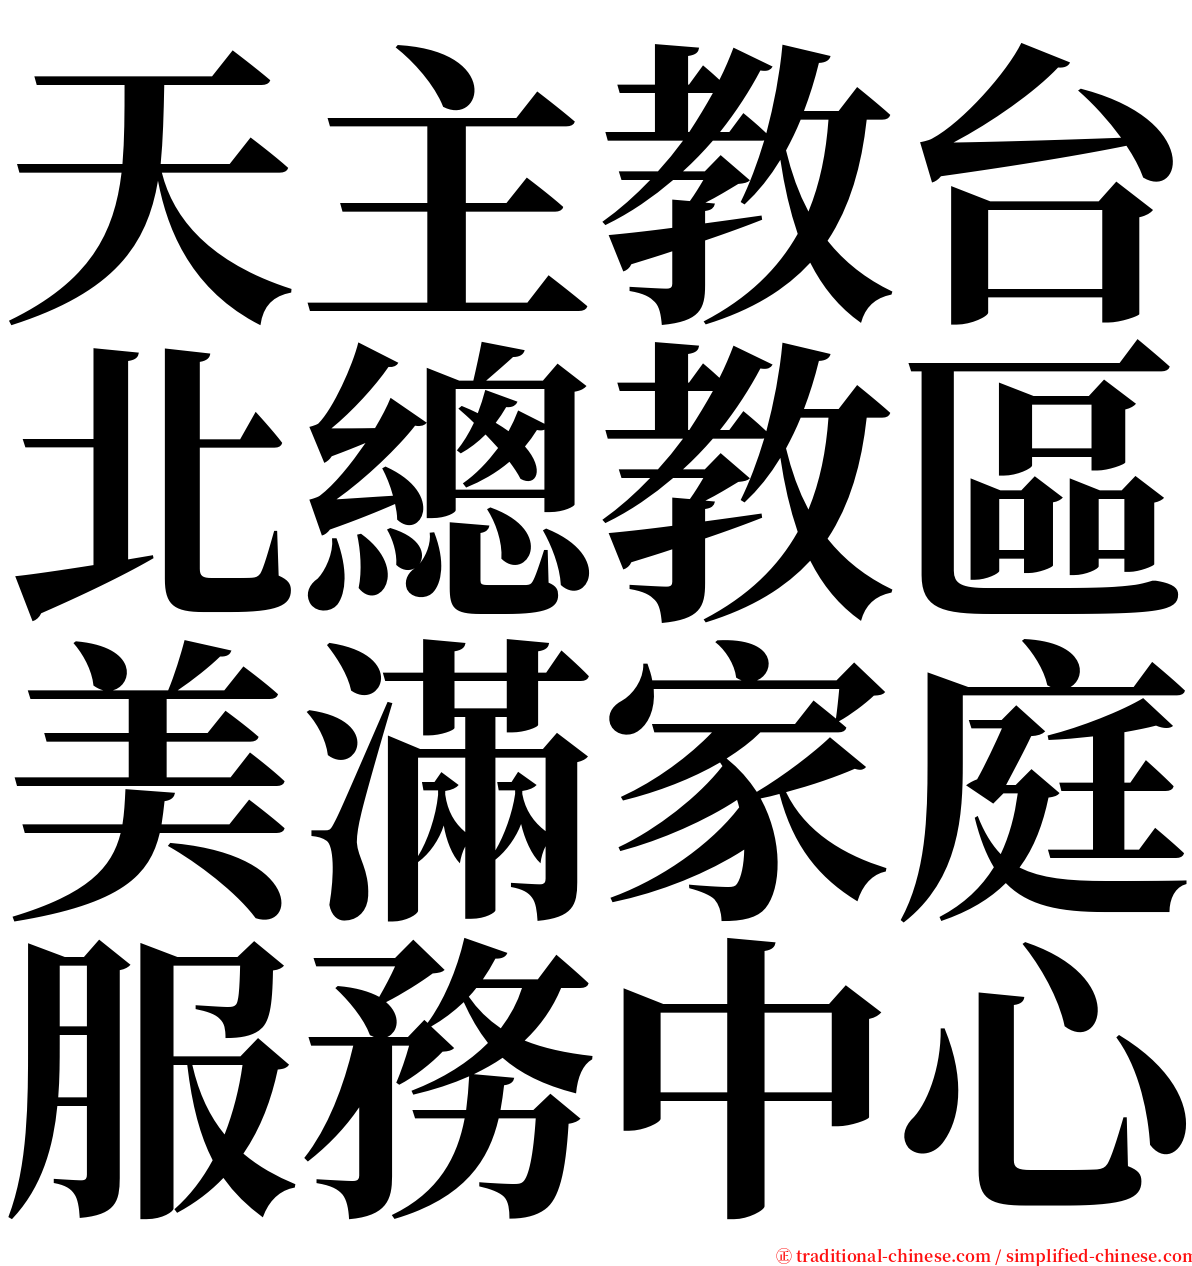 天主教台北總教區美滿家庭服務中心 serif font